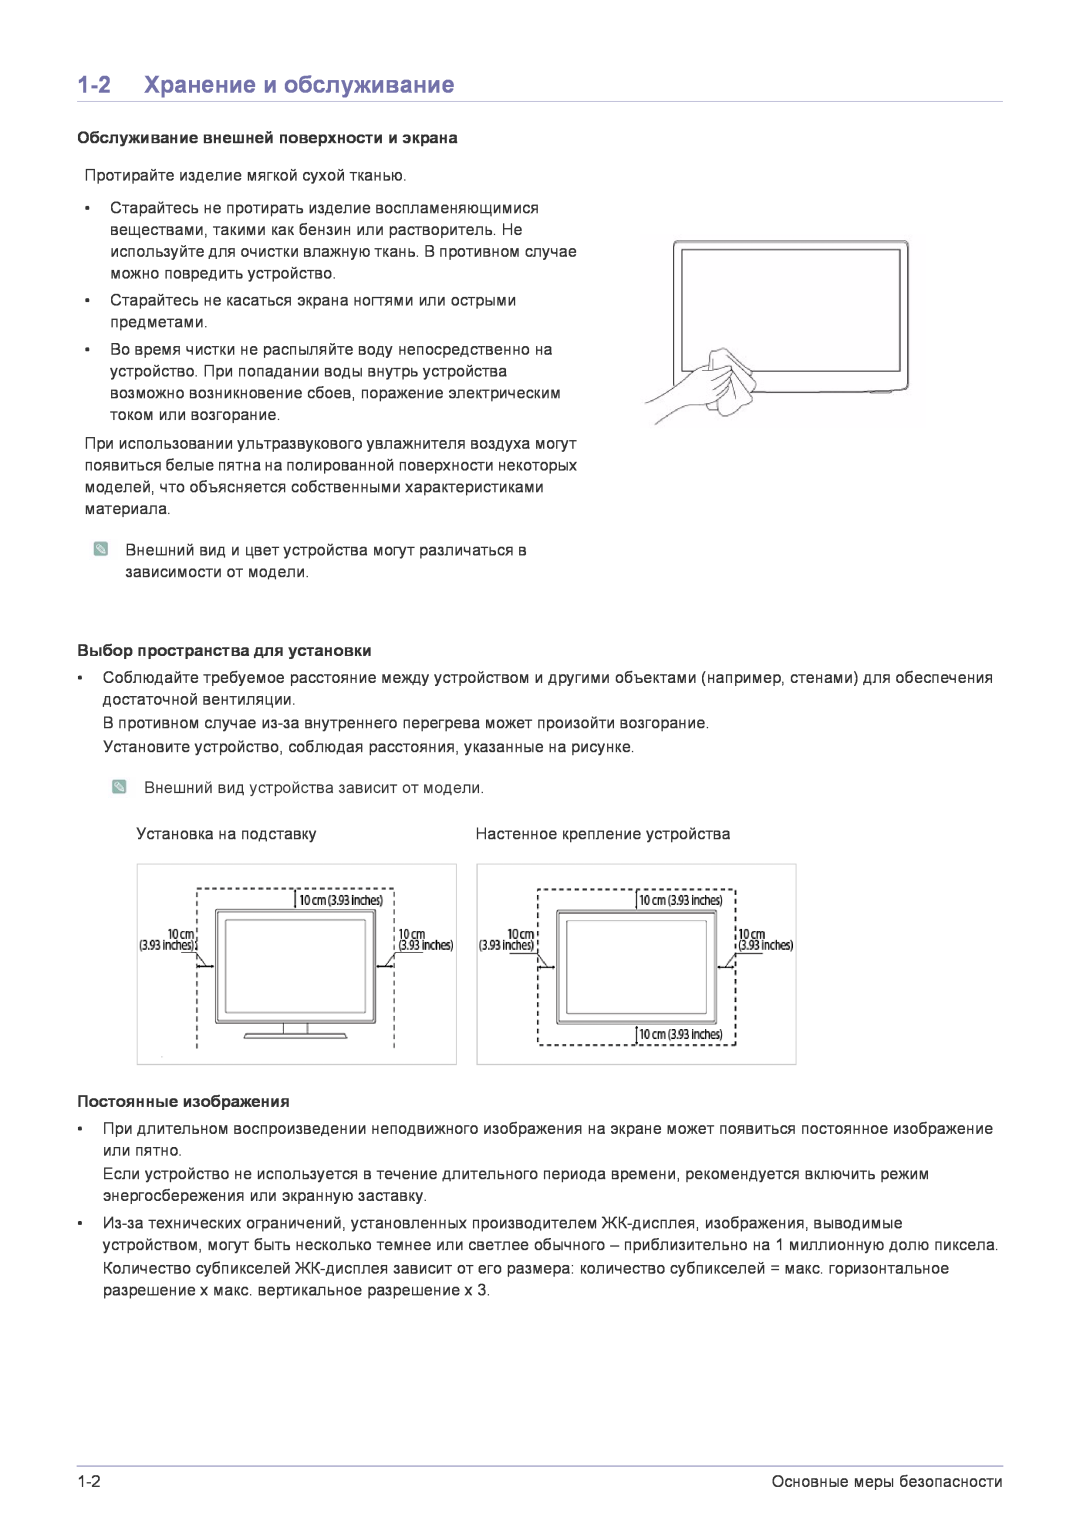 Samsung LS22FMDGF/EN manual 1-2 Хранение и обслуживание, Обслуживание внешней поверхности и экрана, Постоянные изображения 